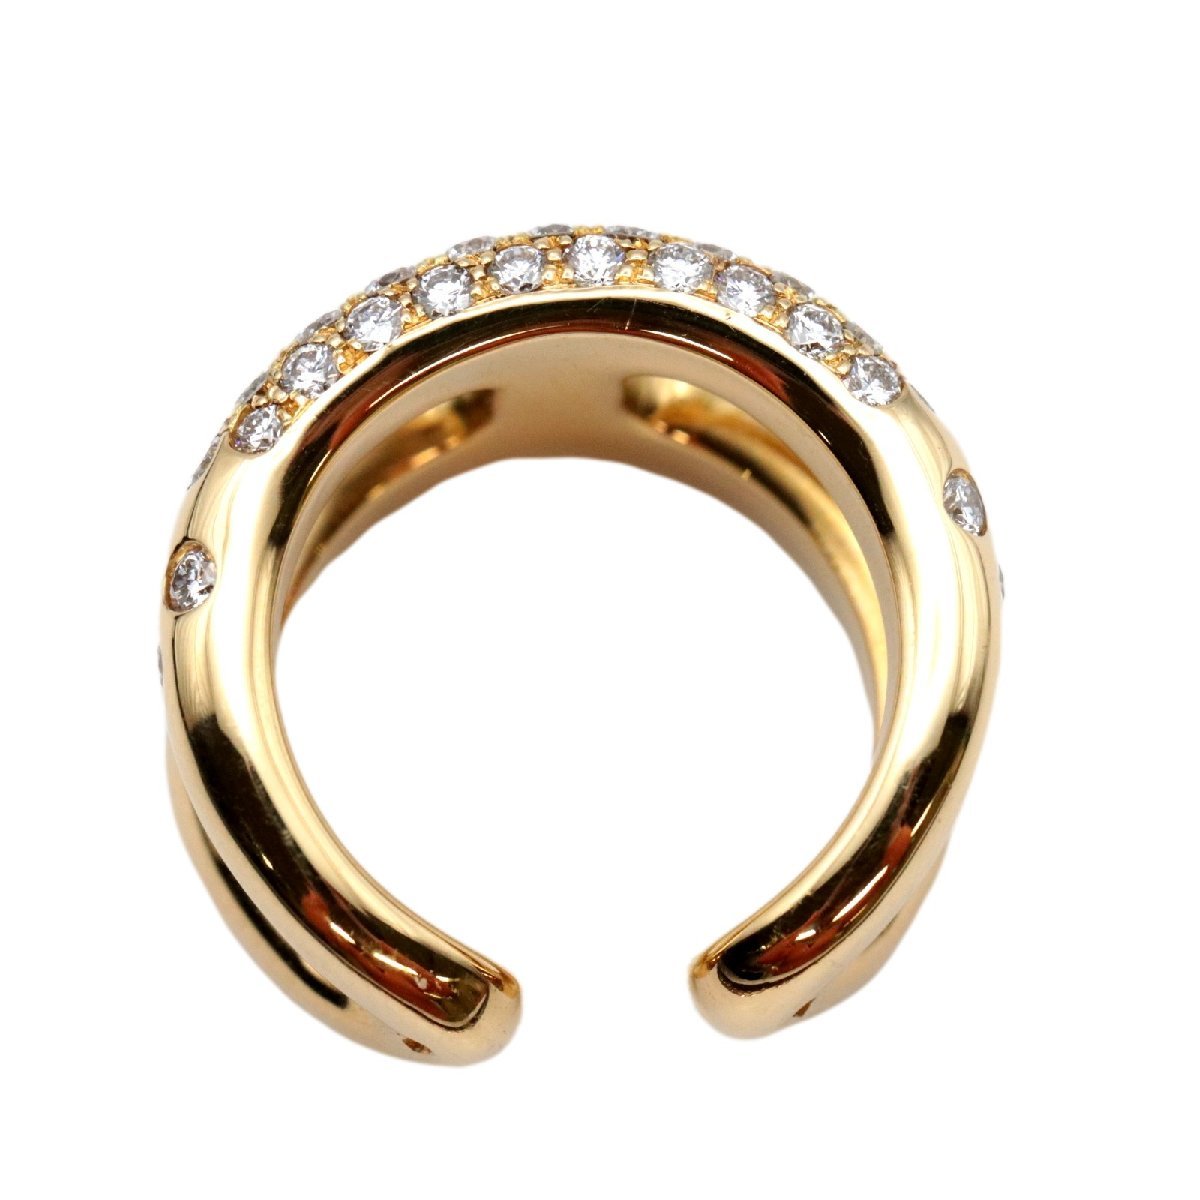  прекрасный товар Hermes oz mozPM кольцо #50 10 номер бриллиант Au750 K18YG желтое золото женский кольцо ювелирные изделия HERMES